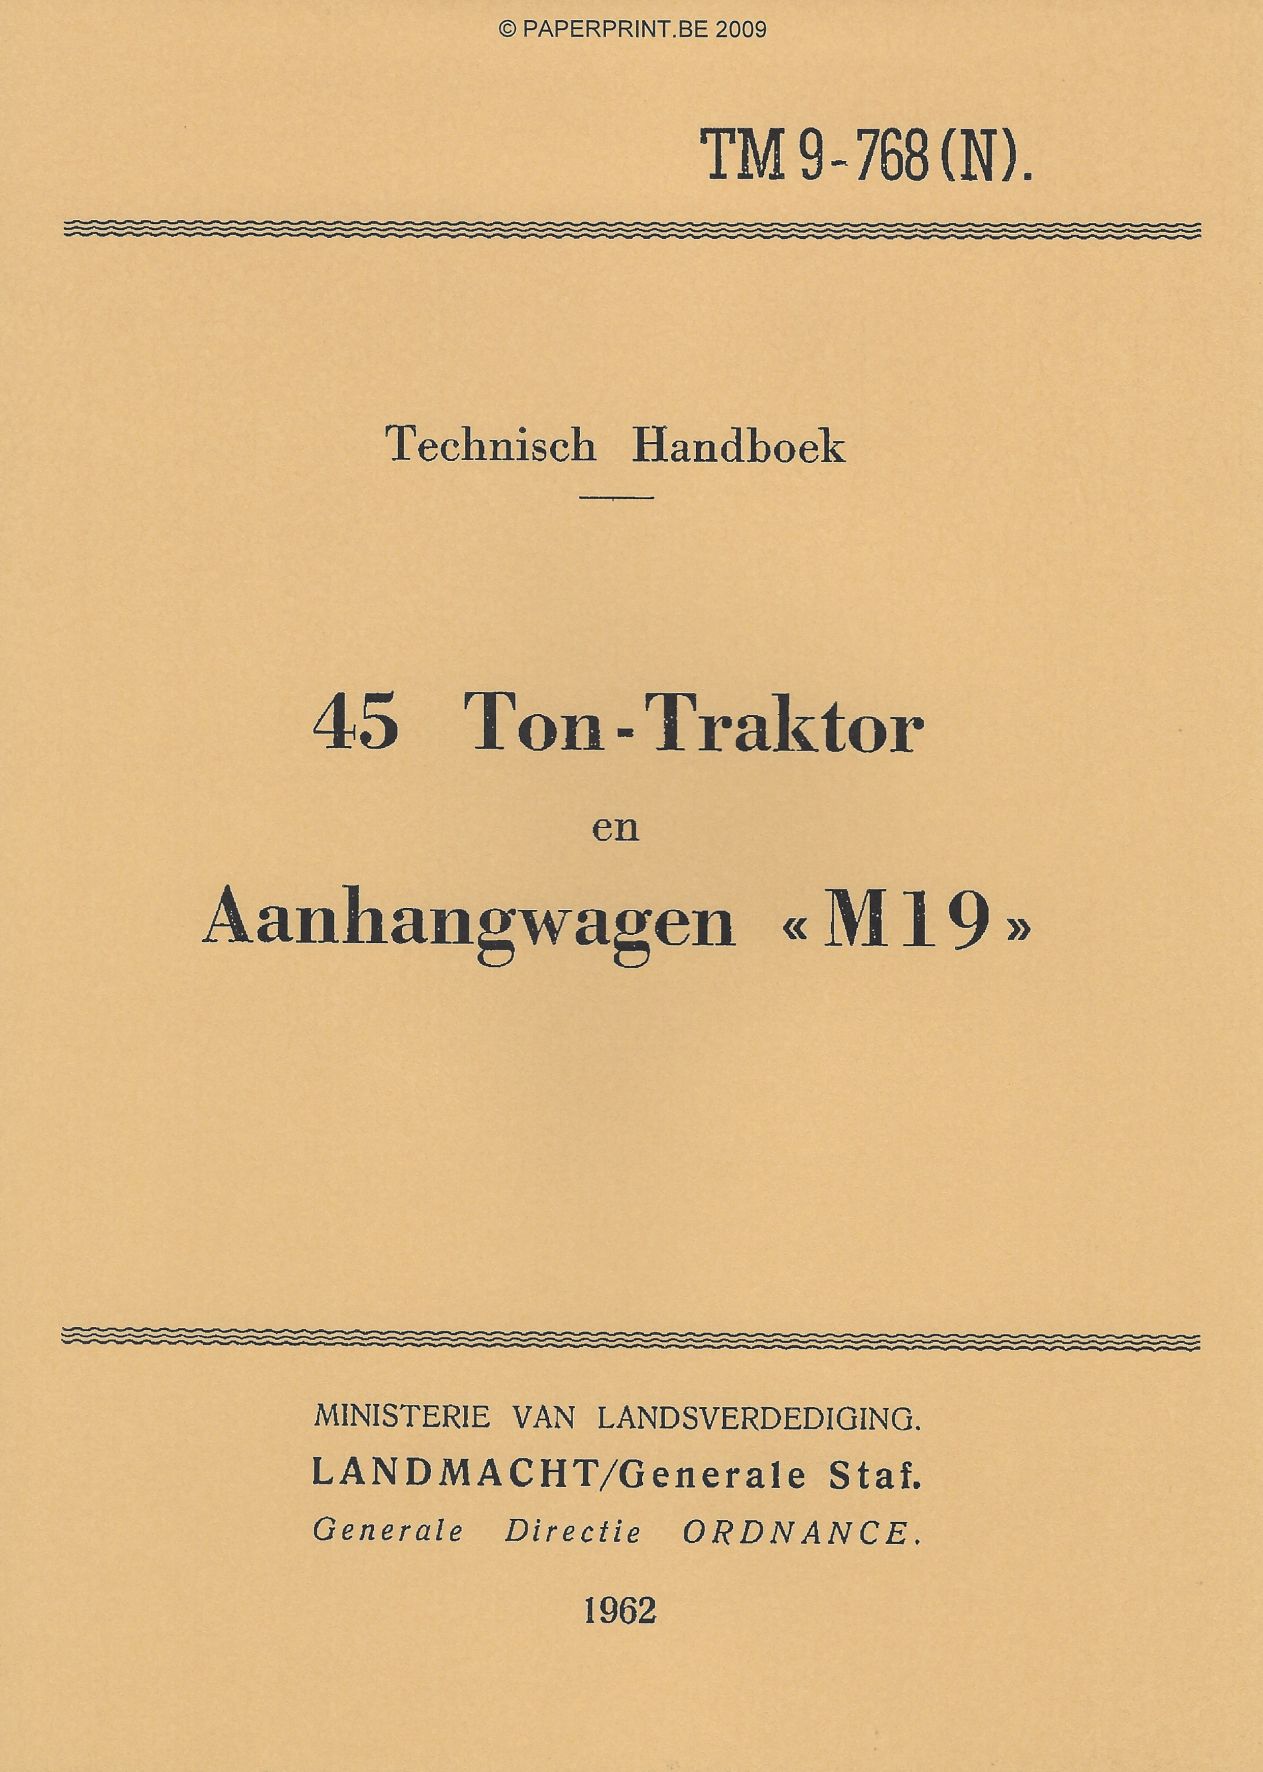 TM 9-768 NL 45 TON TRAKTOR EN AANHANGWAGEN M19